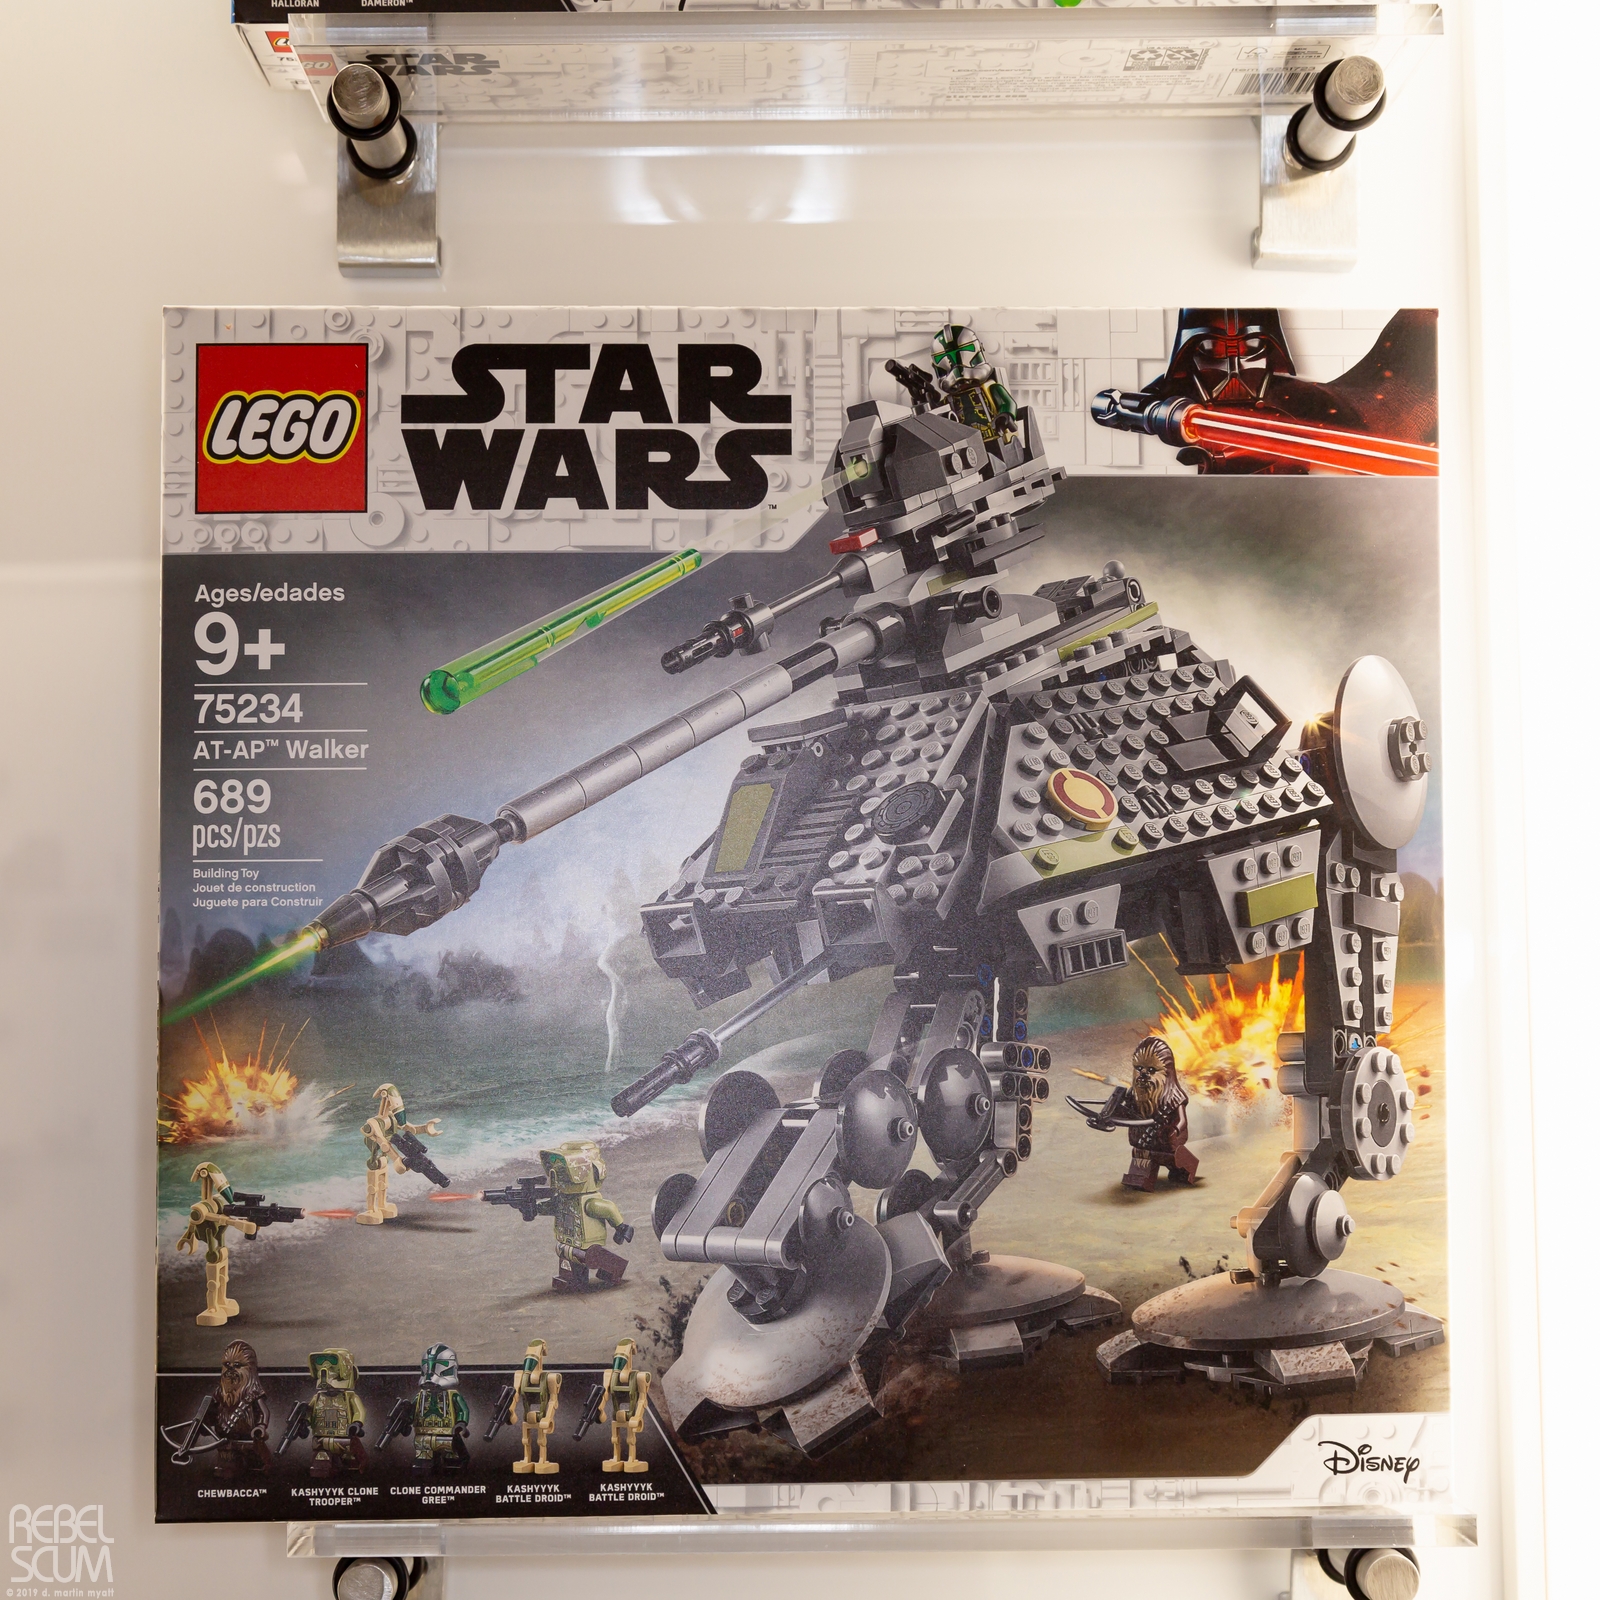 Toy-Fair-New-York-2019-Star-Wars-LEGO-005.jpg